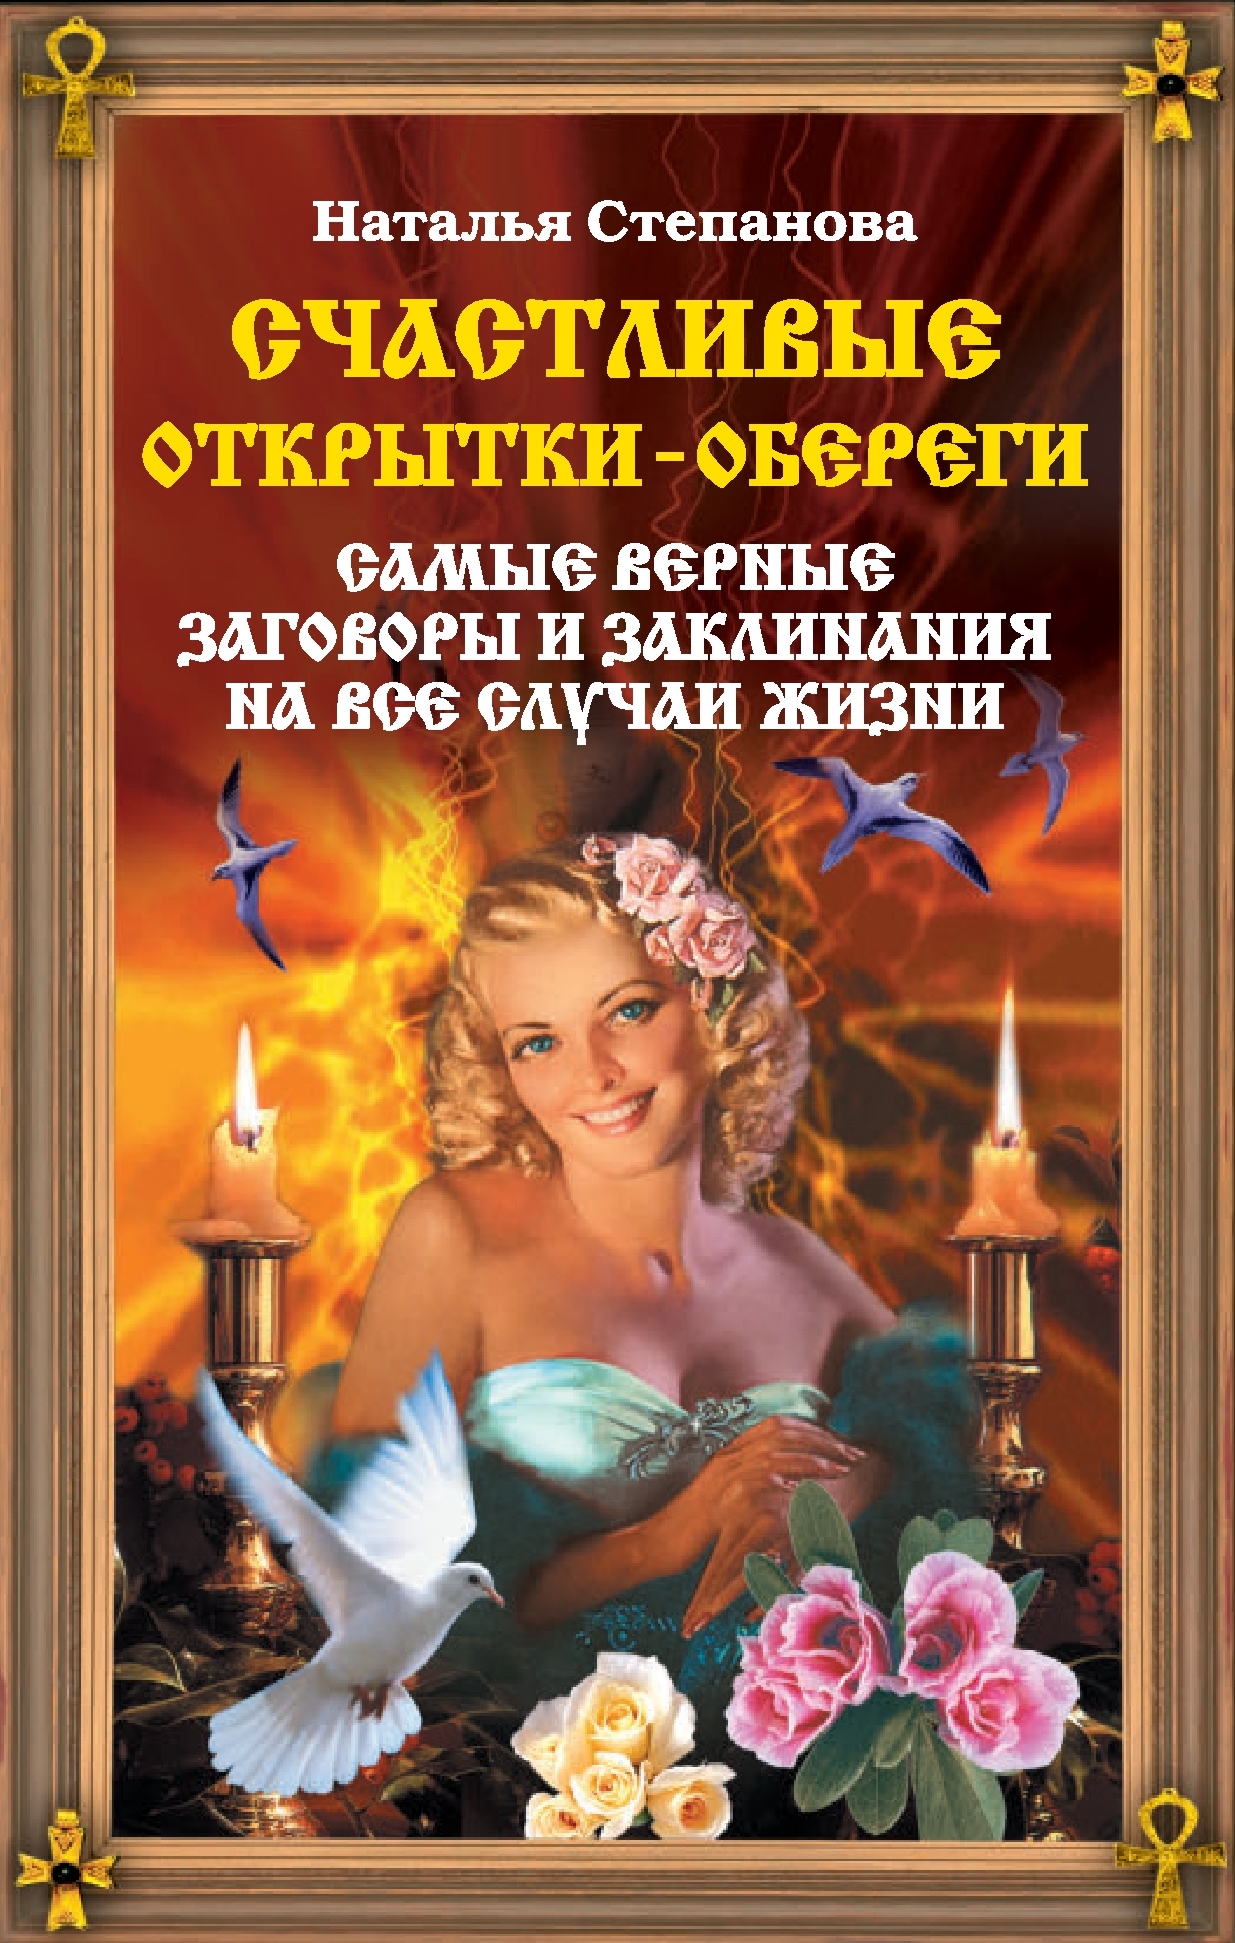 Наталья Степанова - «Счастливые открытки-обереги. Самые верные заговоры и заклинания на все случаи жизни»